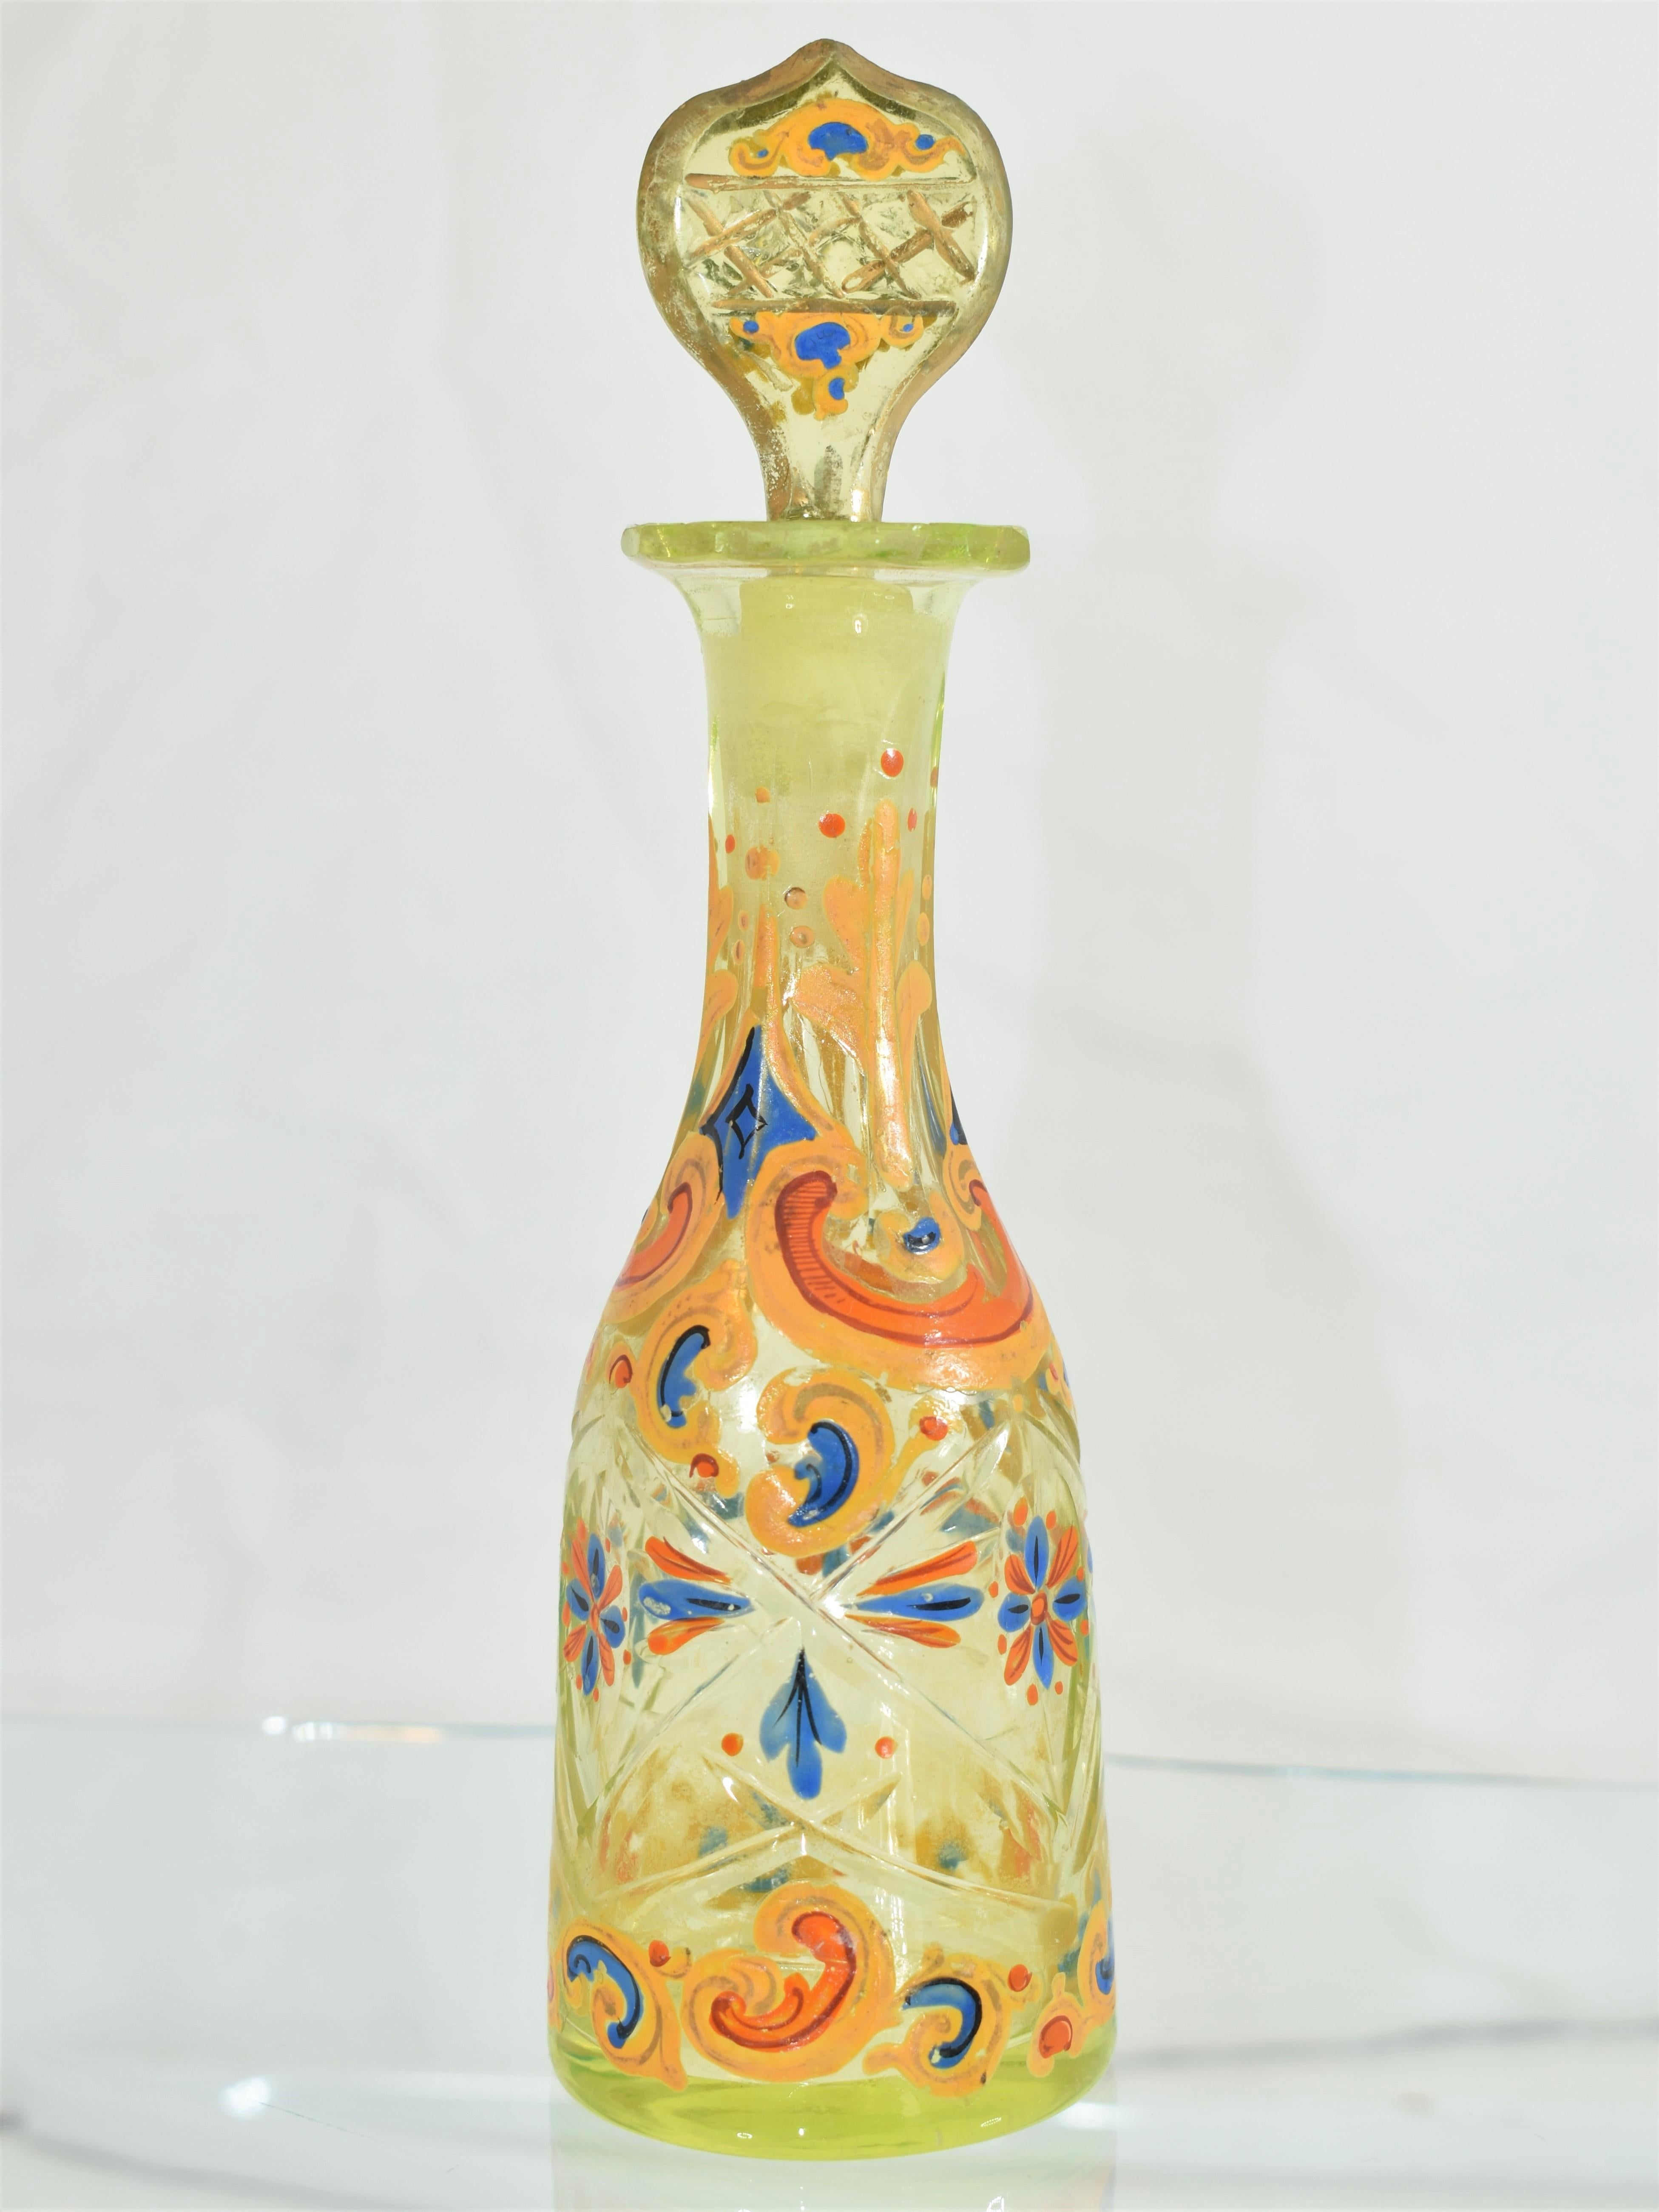 Antique Enamelled Uranium Glass Set, Bohemian for Ottoman Market, 19th Century For Sale 1